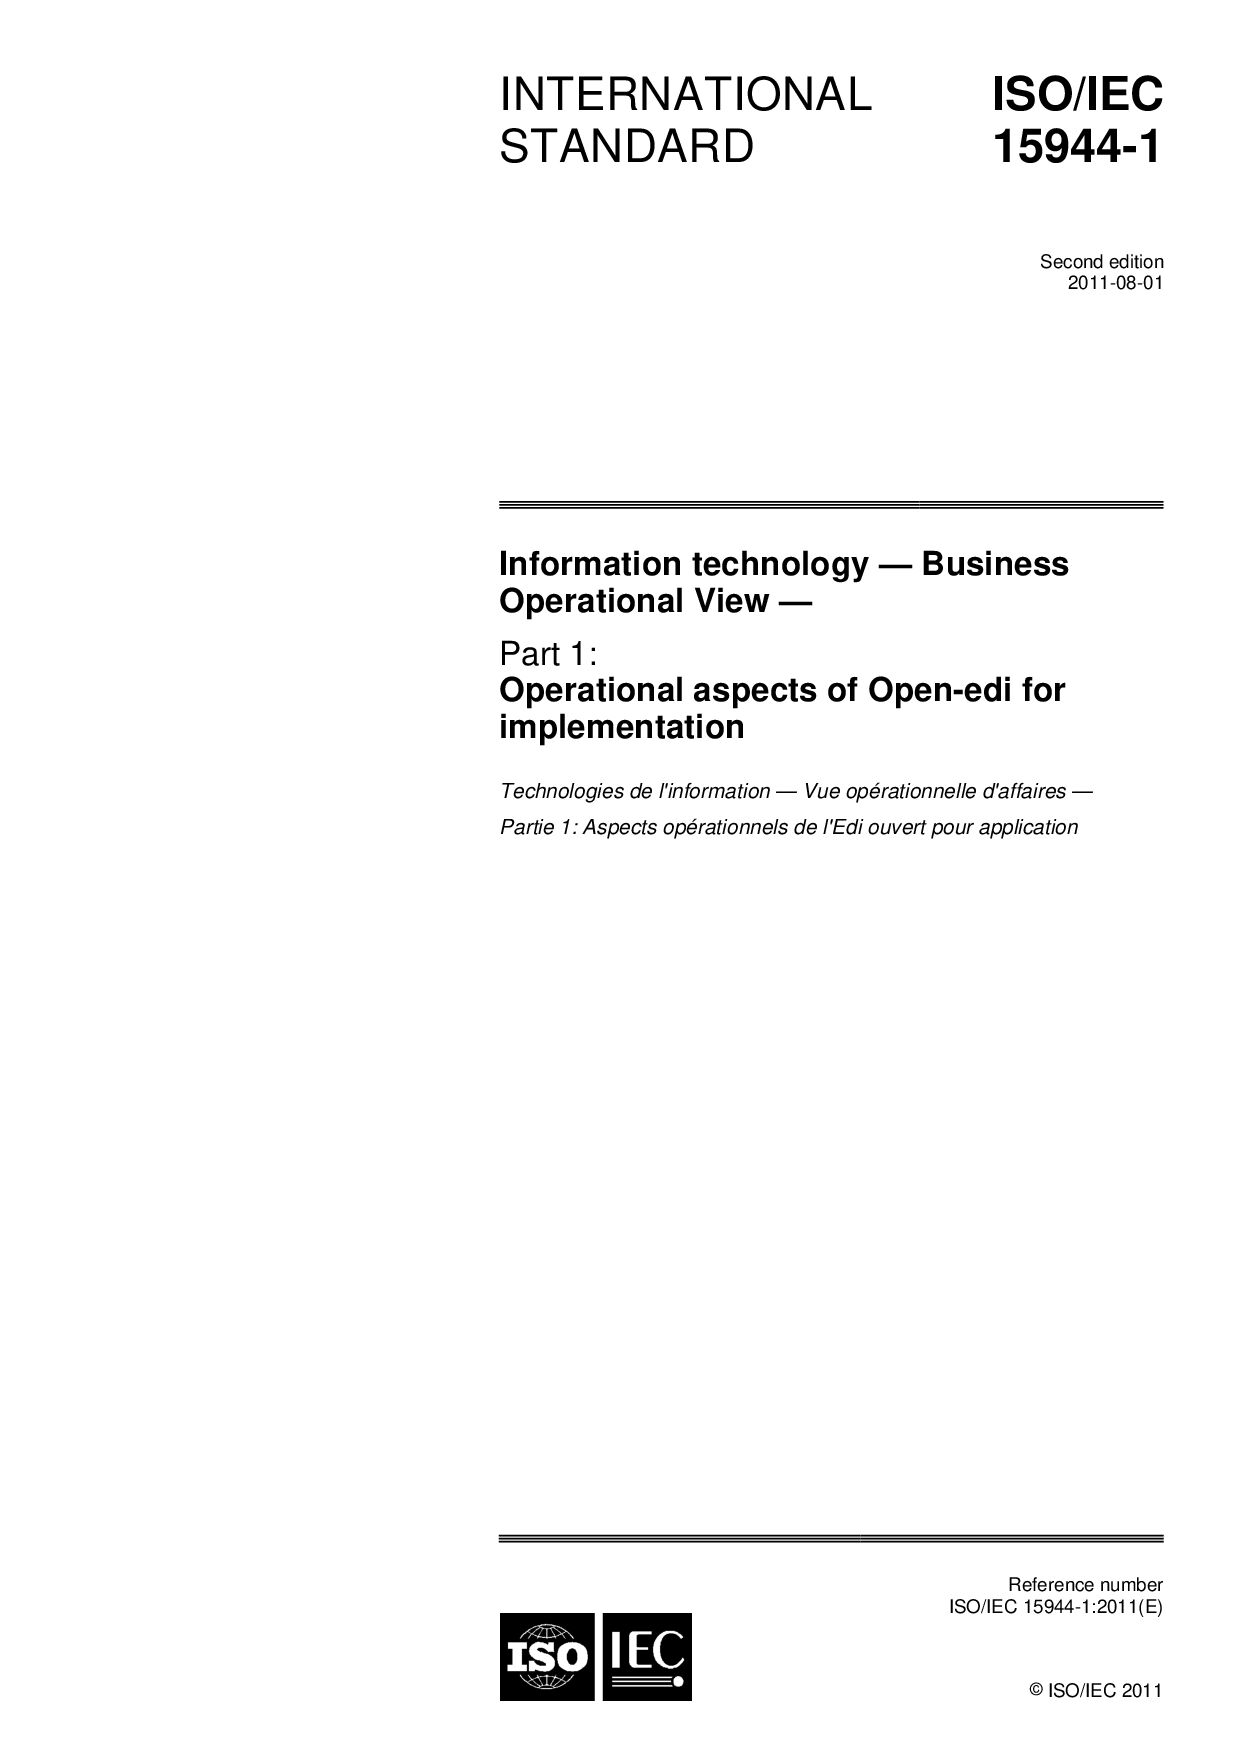 ISO/IEC 15944-1:2011封面图